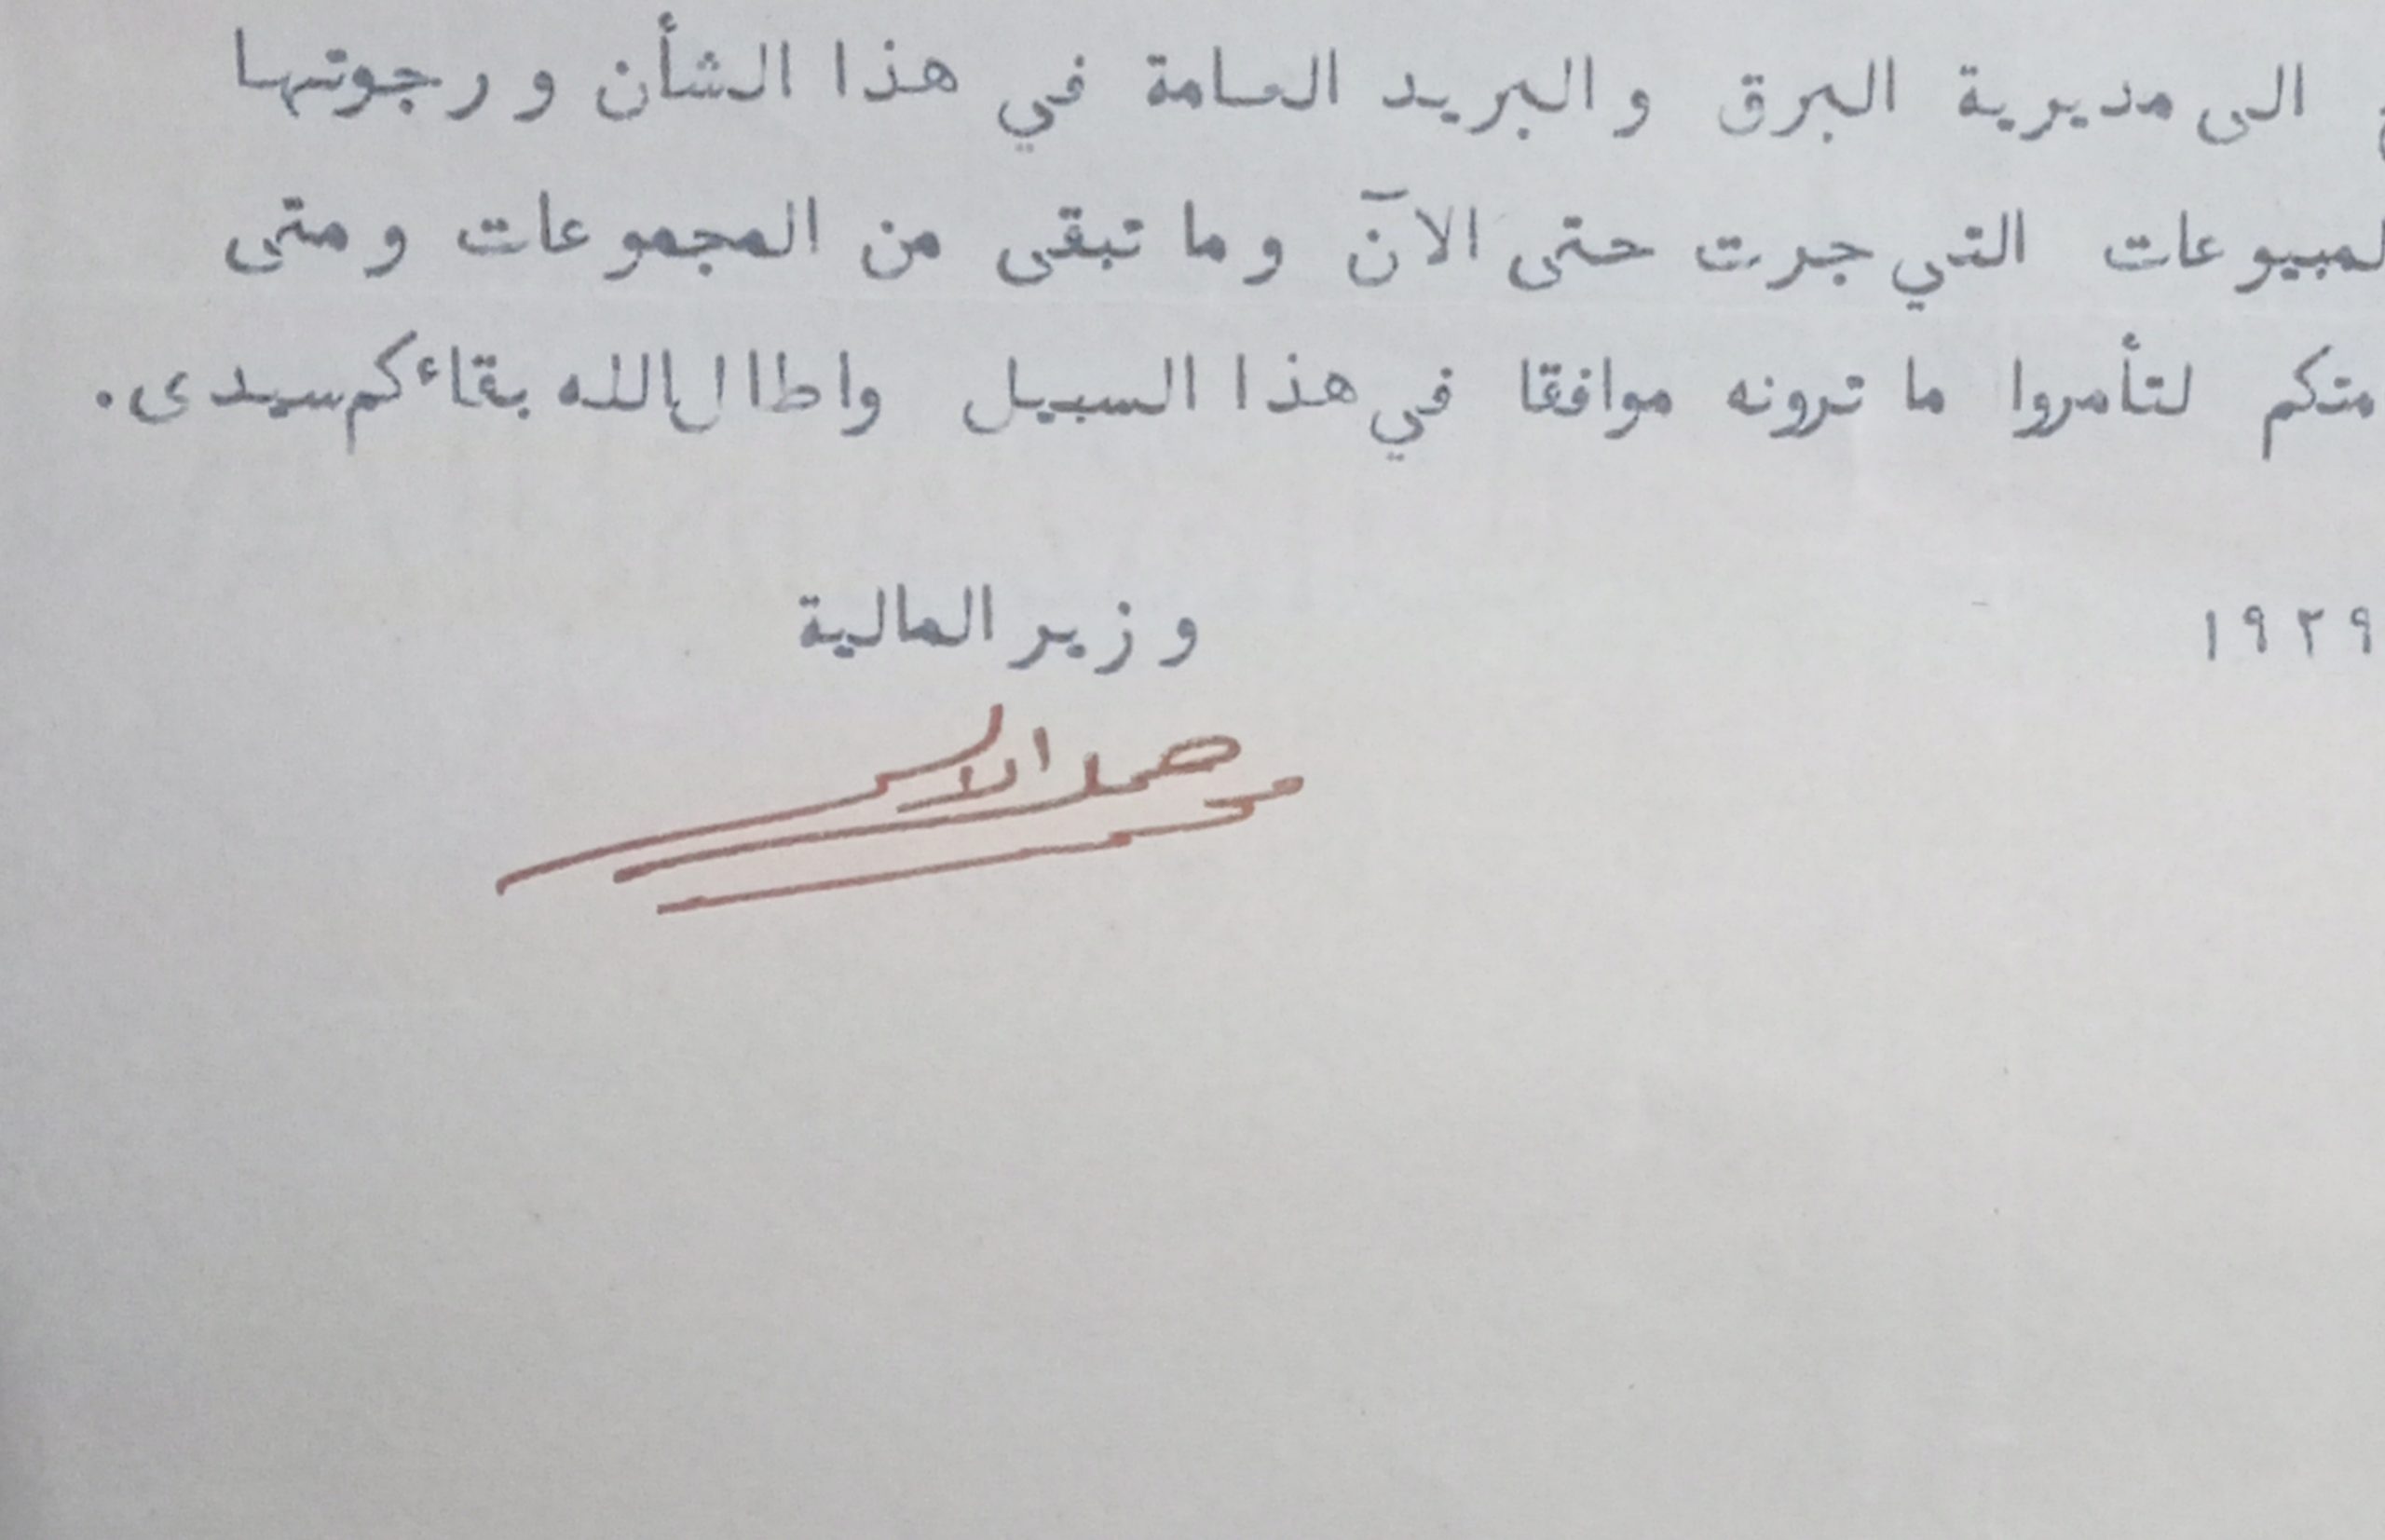 التاريخ السوري المعاصر - توقيع محمد جميل الألشي وزير المالية في سورية عام 1929